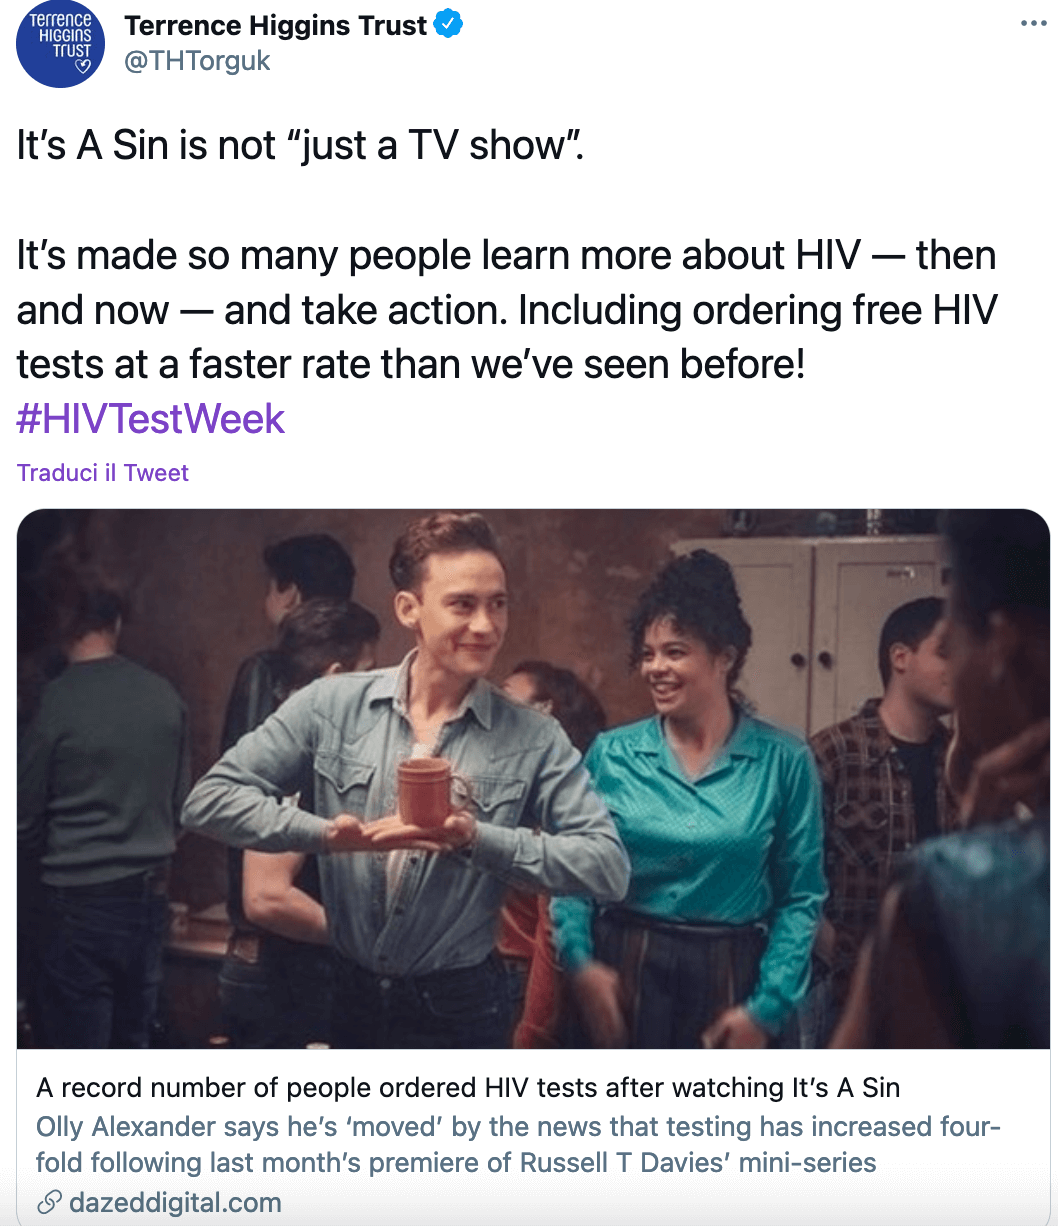 "It's a Sin", record di test HIV nel Regno Unito: quando la TV fa buon uso del proprio "potere" - Its a Sin - Gay.it